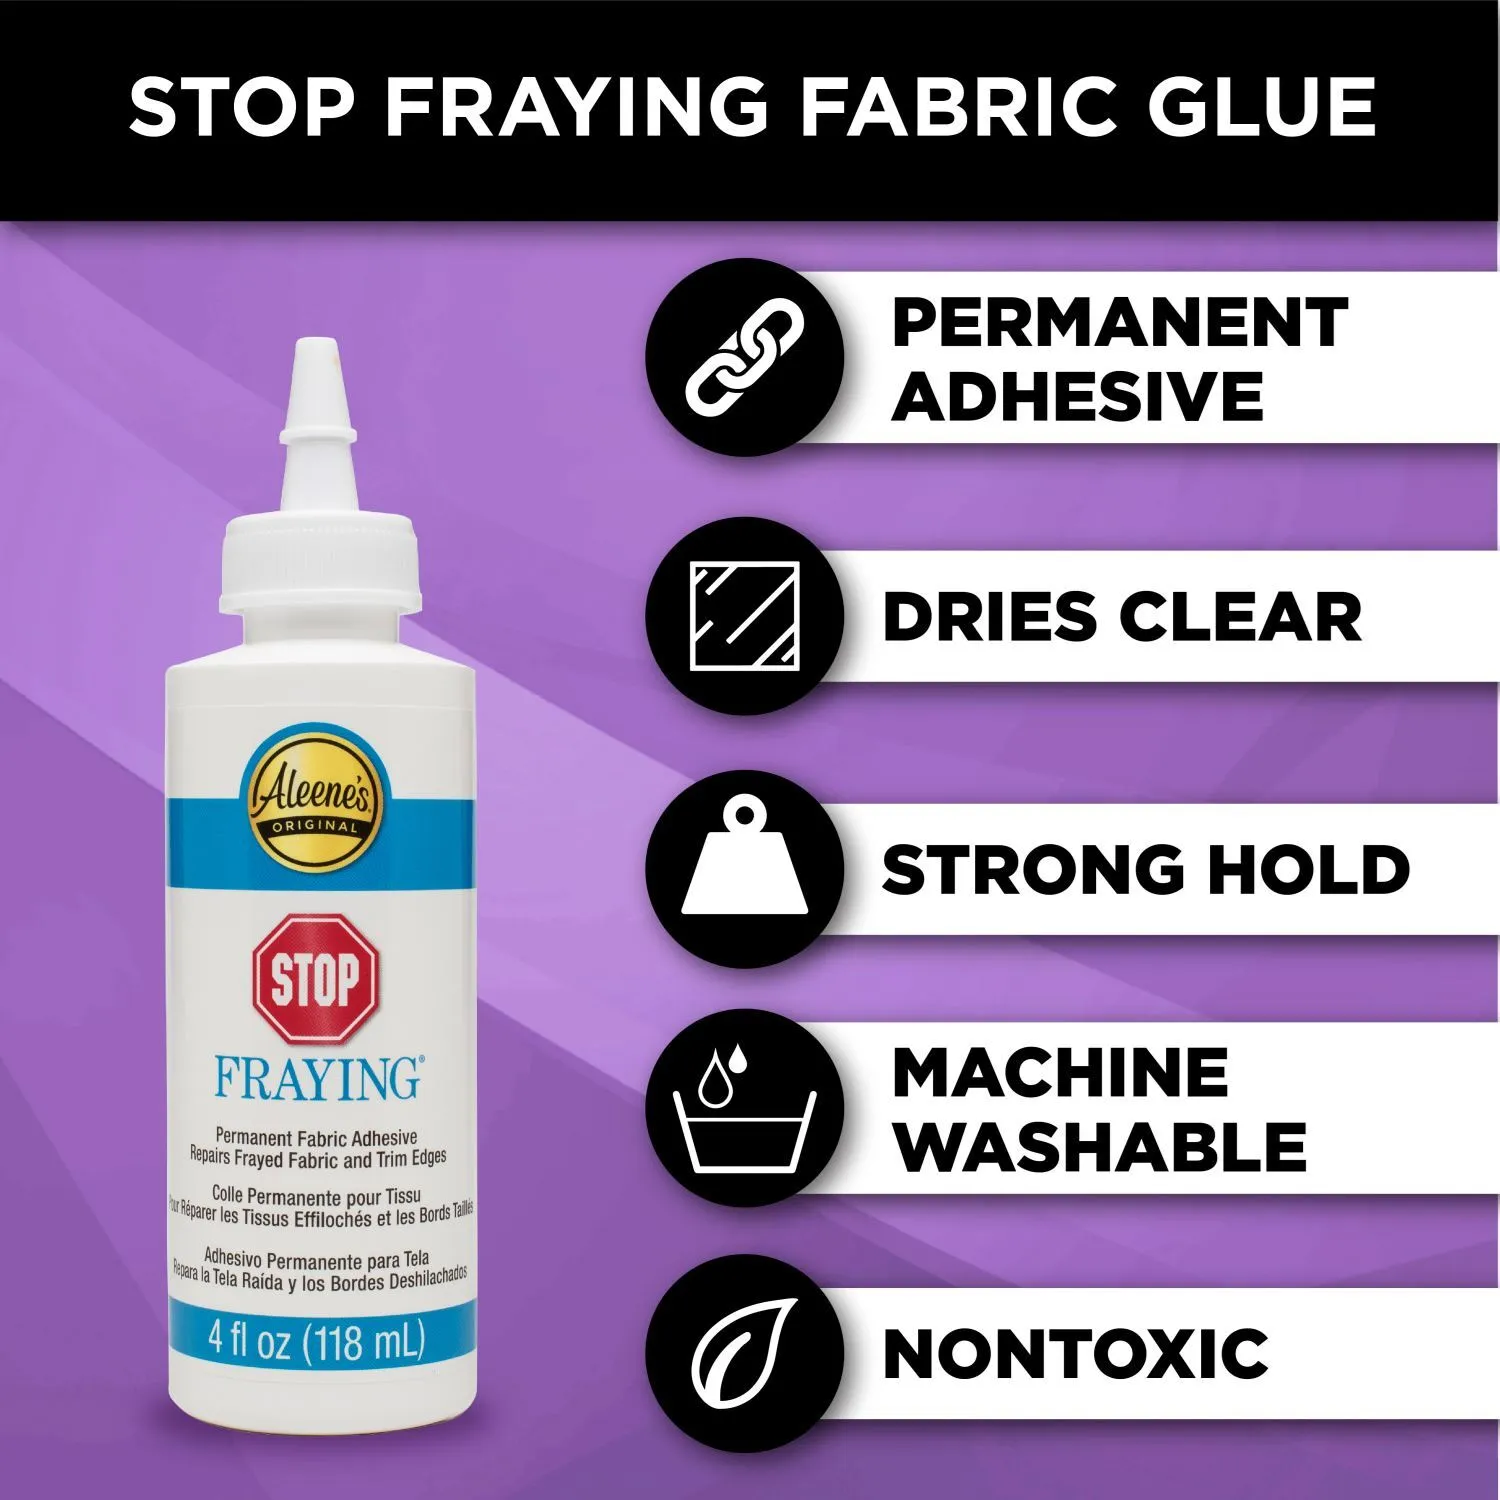 Permanent Fabric Glue Big Sales